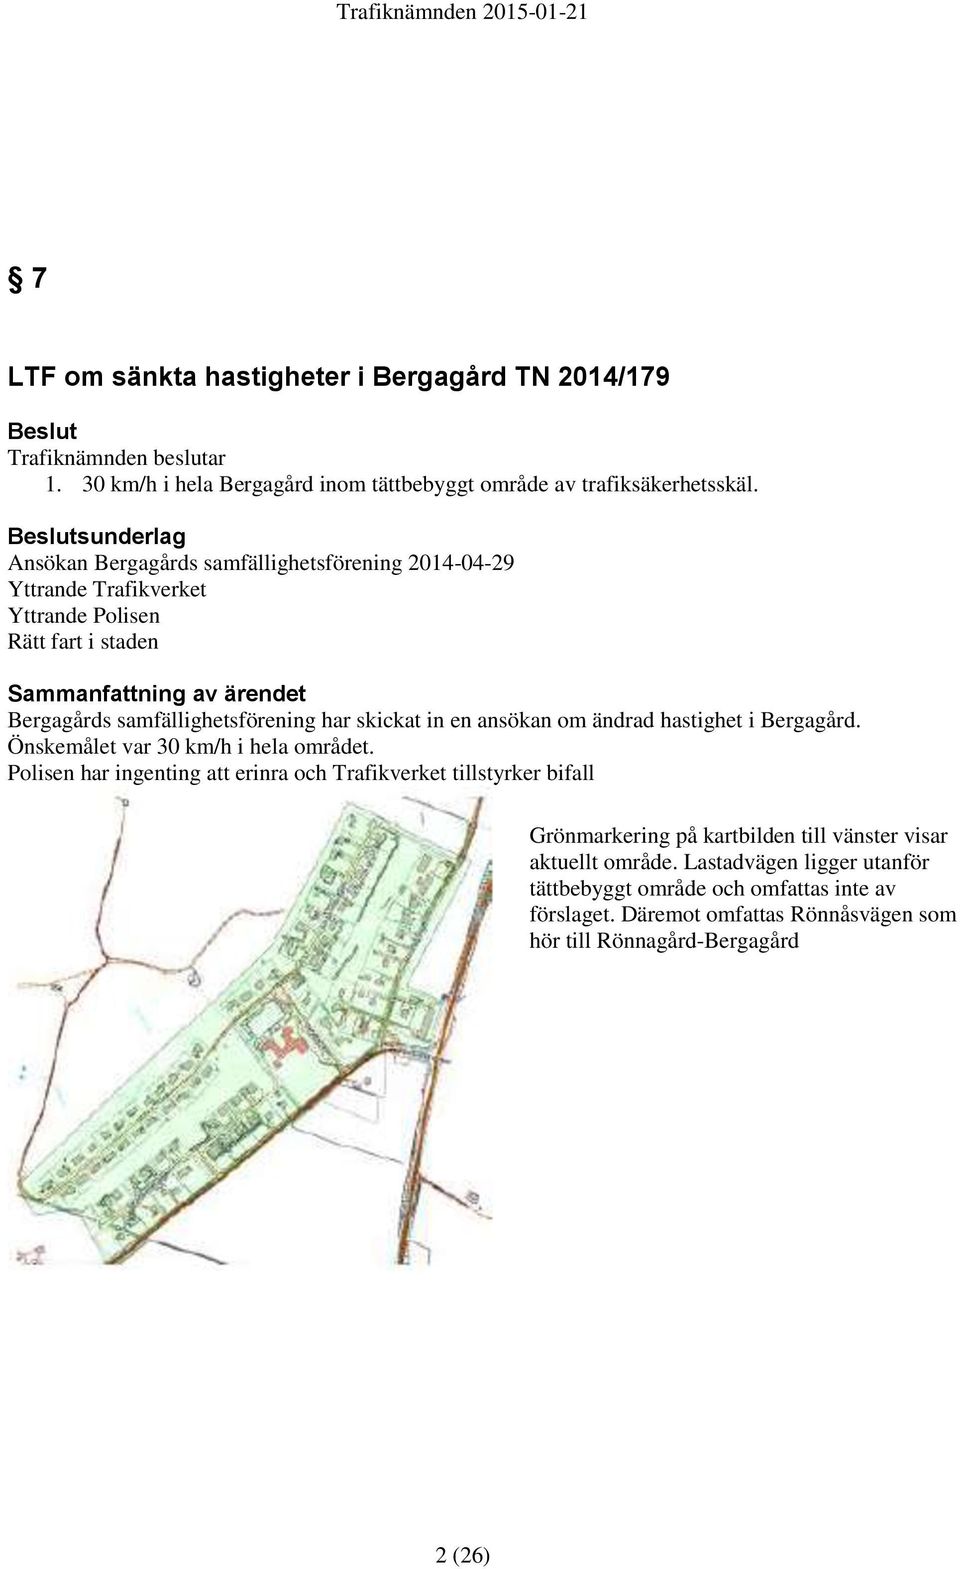 samfällighetsförening har skickat in en ansökan om ändrad hastighet i Bergagård. Önskemålet var 30 km/h i hela området.